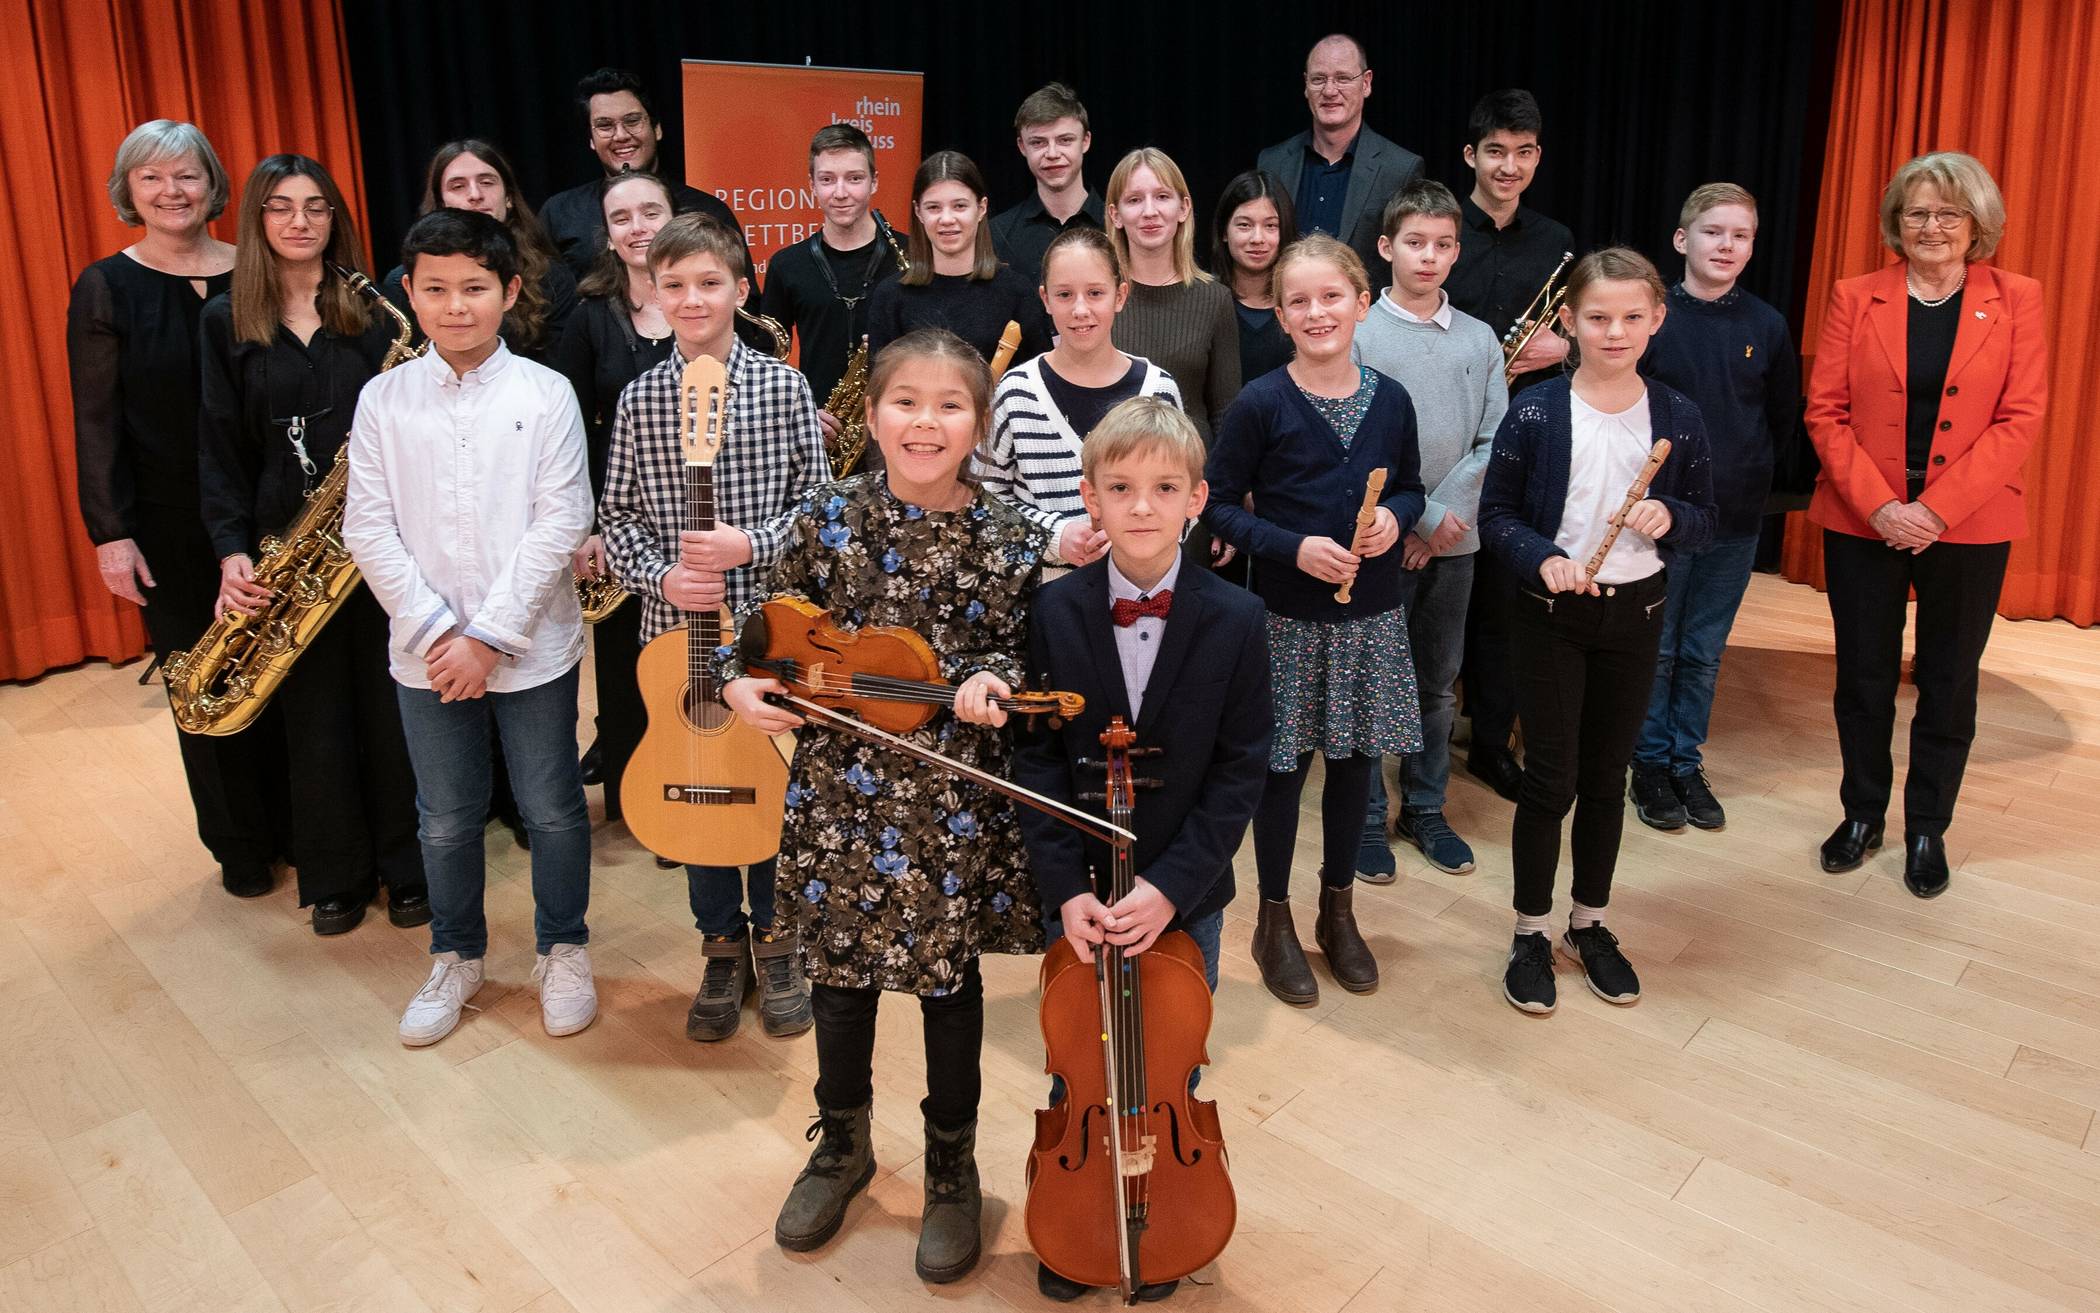  Die Teilnehmer der Musikschule im Rhein-Kreis freuten sich über die Glückwünsche von Angela Stein-Ulrich, stellvertretenden Landrätin, von Musikschullehrer Klaus Mader und Ruth Braun-Sauerwein, Leiterin der Kreis-Musikschule. 